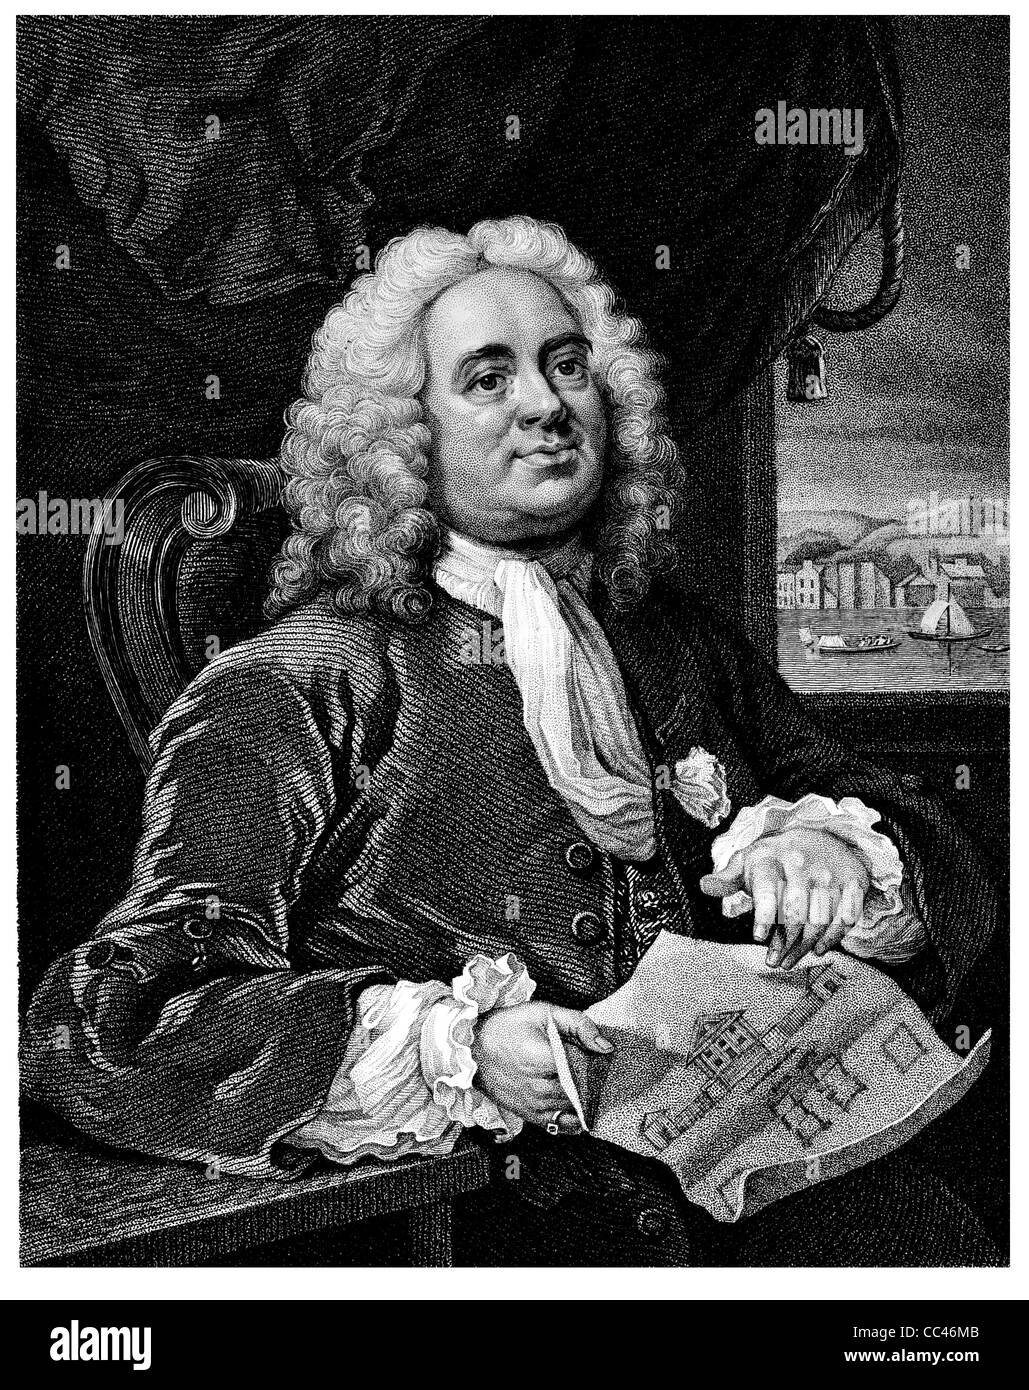 Daniel (1681-1754) sur gravure de 1800. L'architecte britannique. Gravé par B. Holl après une photo par Hogarth. Banque D'Images